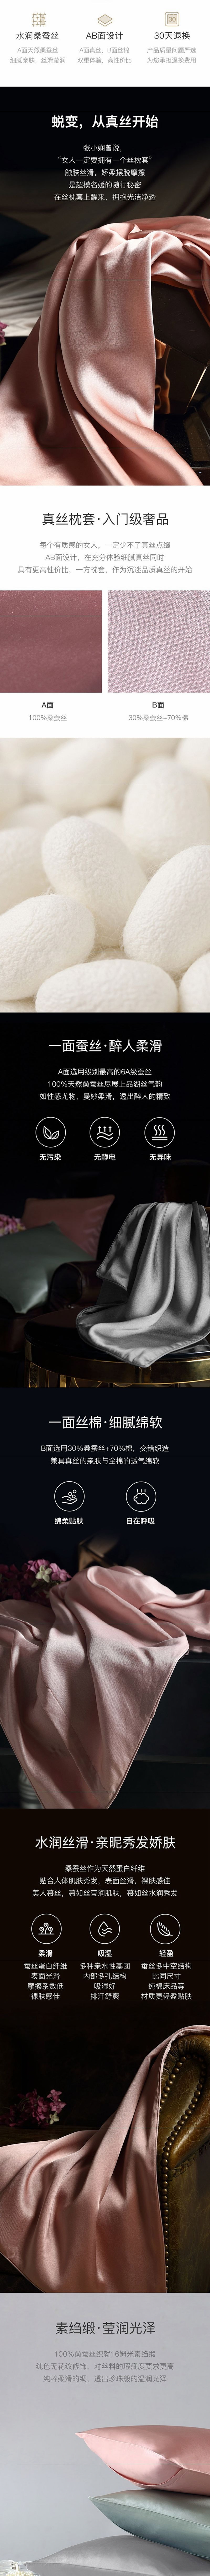 【美仓发货 5-7日达】网易严选 真丝枕套+眼罩 粉色Standard(枕套粉色20x26英寸+眼罩粉色7.87x4.3英寸)